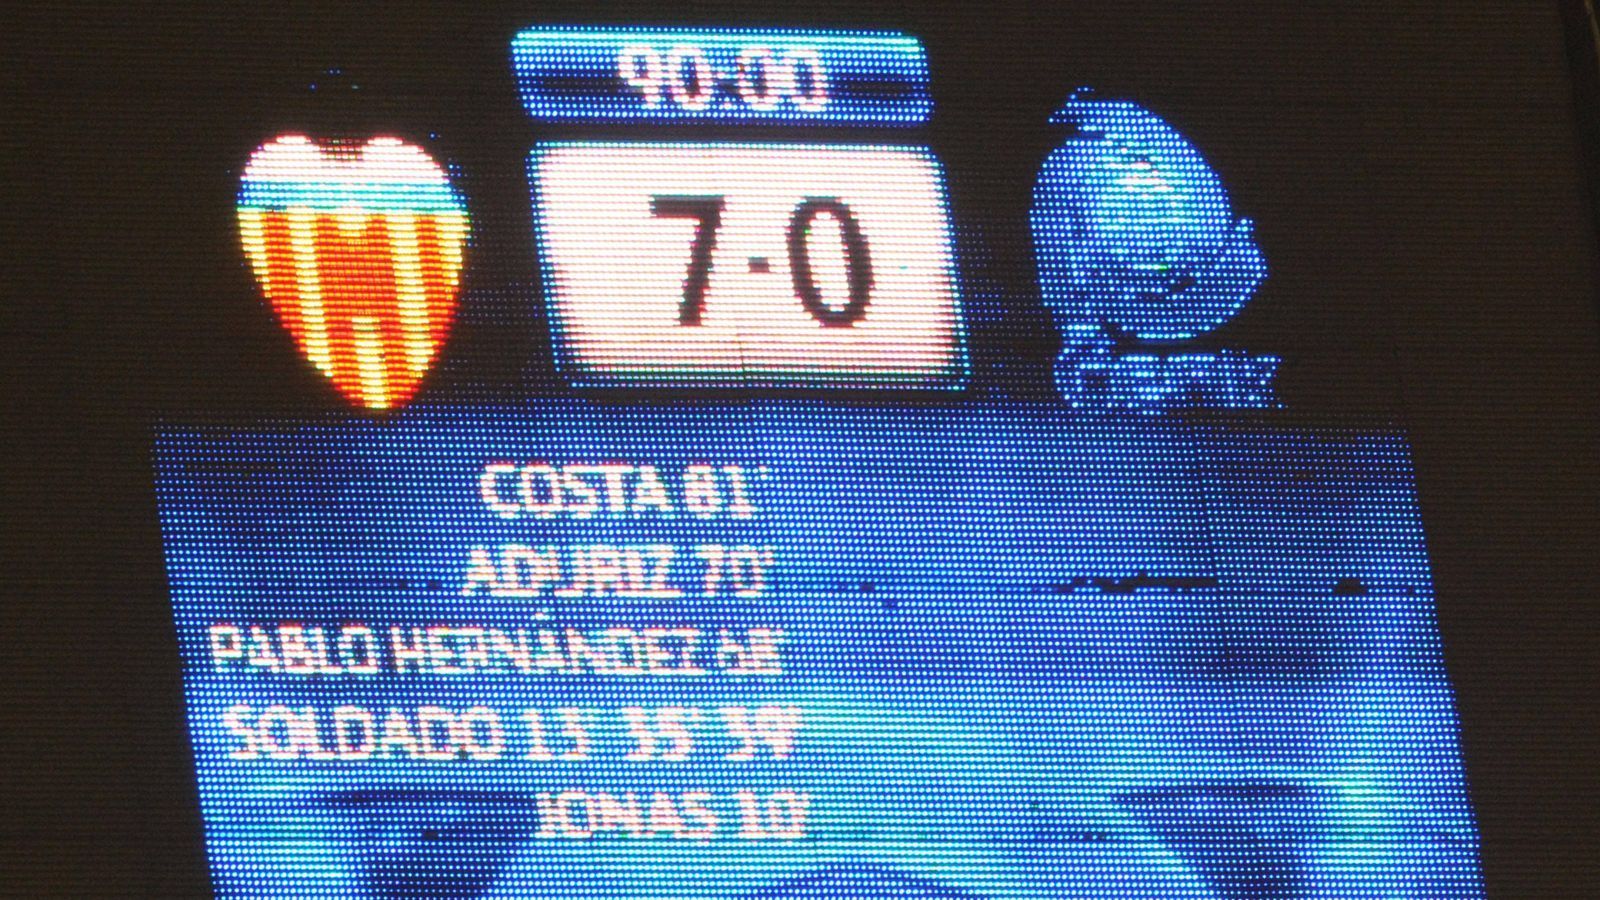 
                <strong>FC Valencia - KRC Genk 7:0 (23. Dezember 2011)</strong><br>
                So verrückt kann nur der Fußball sein: Einen Spieltag zuvor kommt Genk noch zu einem 1:1-Achtungserfolg gegen den FC Chelsea, gegen Valencia ist das Team anschließend hoffnungslos unterlegen. Roberto Soldado trägt sich drei Mal in die Torschützenliste ein.
              